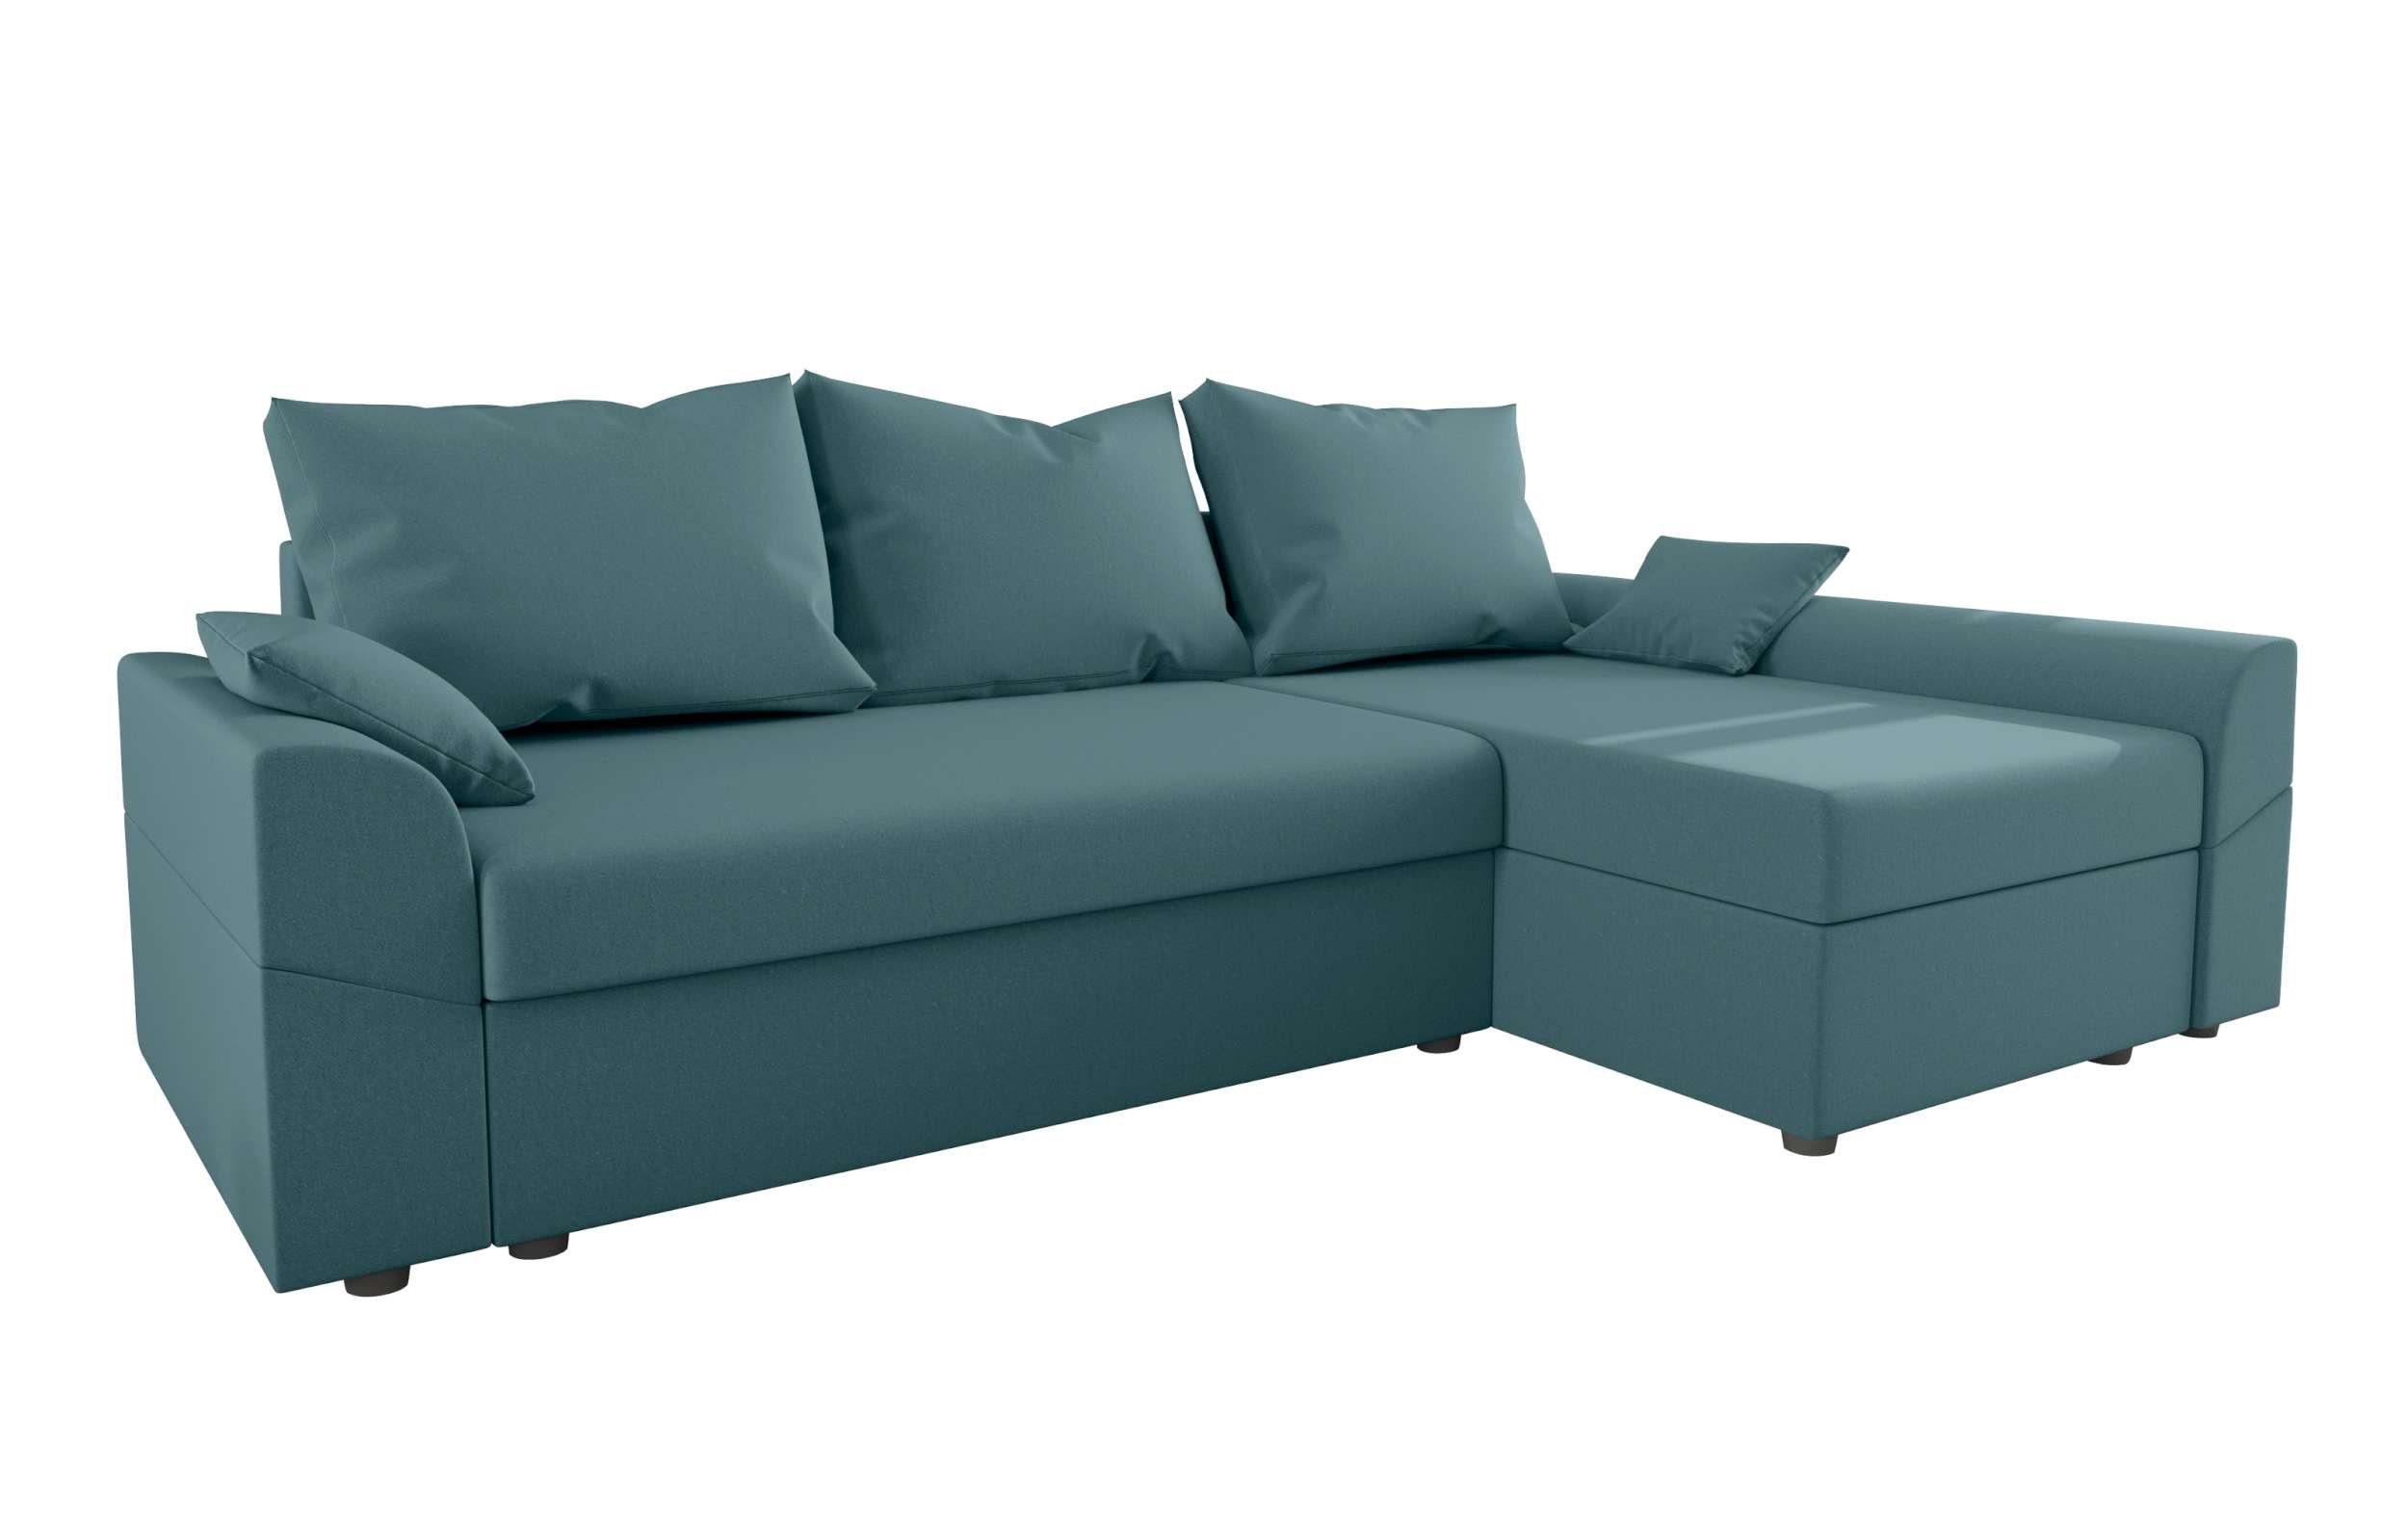 mit Modern Design Aurora, Sofa, Bettfunktion, Eckcouch, L-Form, mit Ecksofa Bettkasten, Sitzkomfort, Stylefy